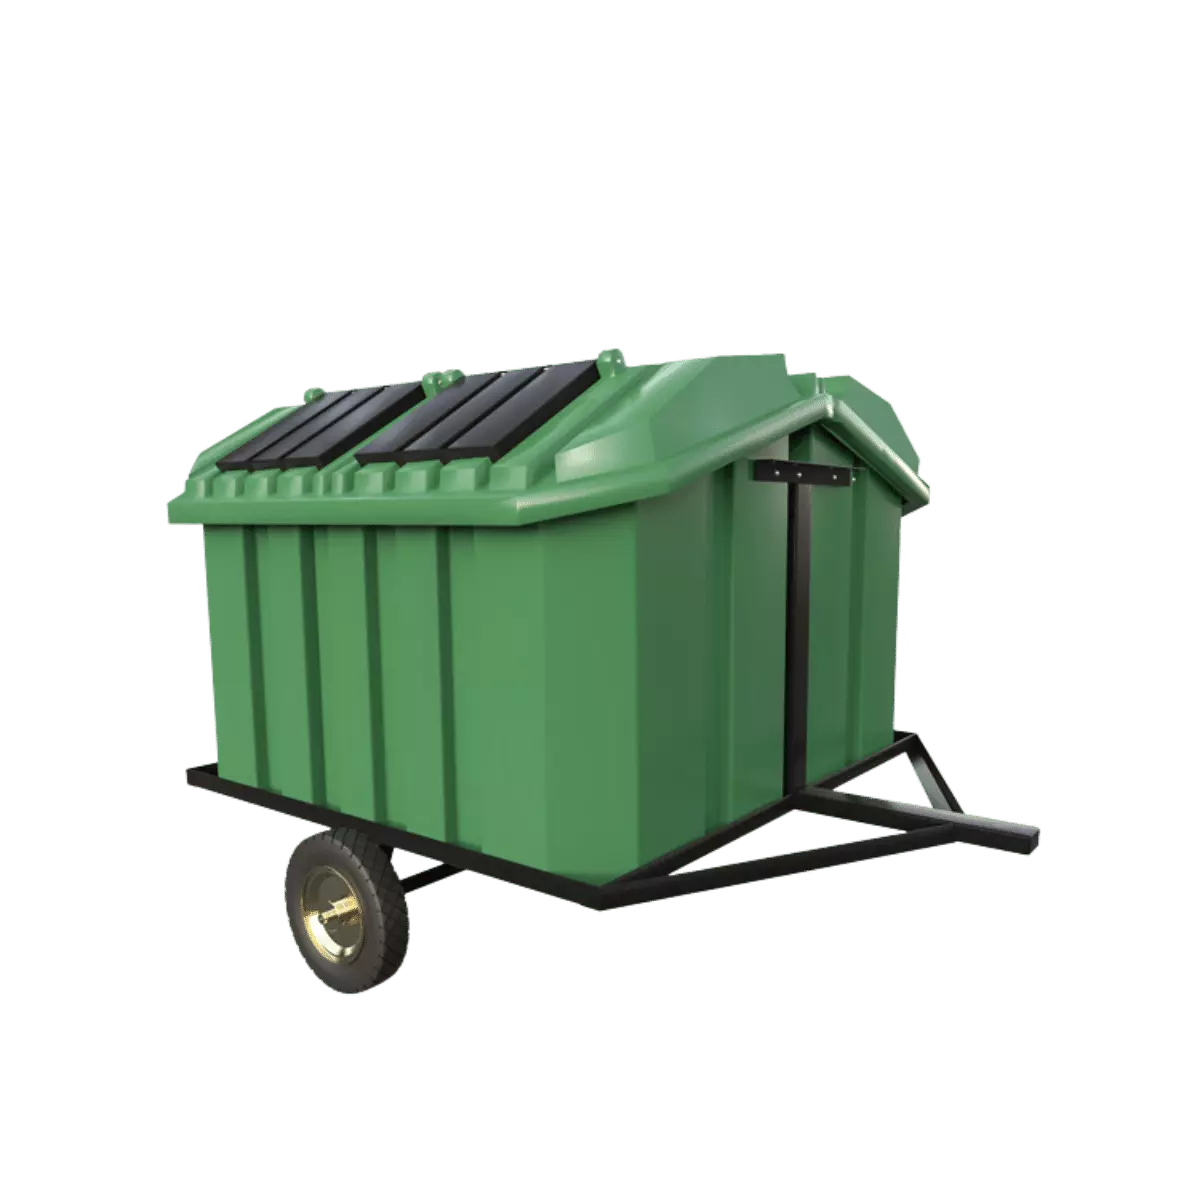 Cómo usar adecuadamente el contenedor de basura municipal?